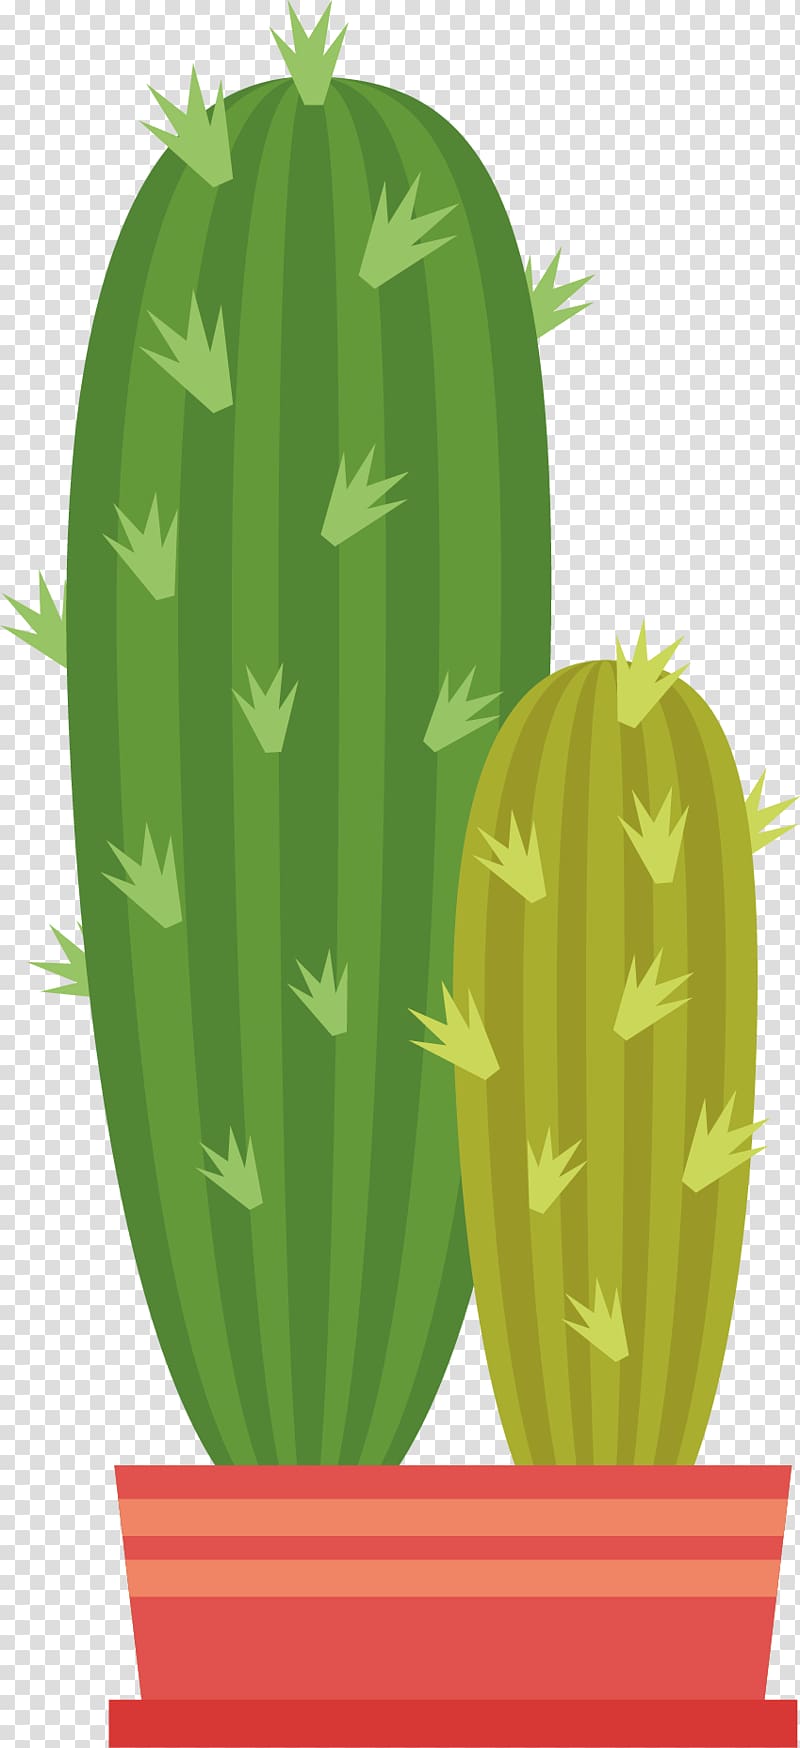 Cactaceae Euclidean Green, Cactus transparent background PNG clipart